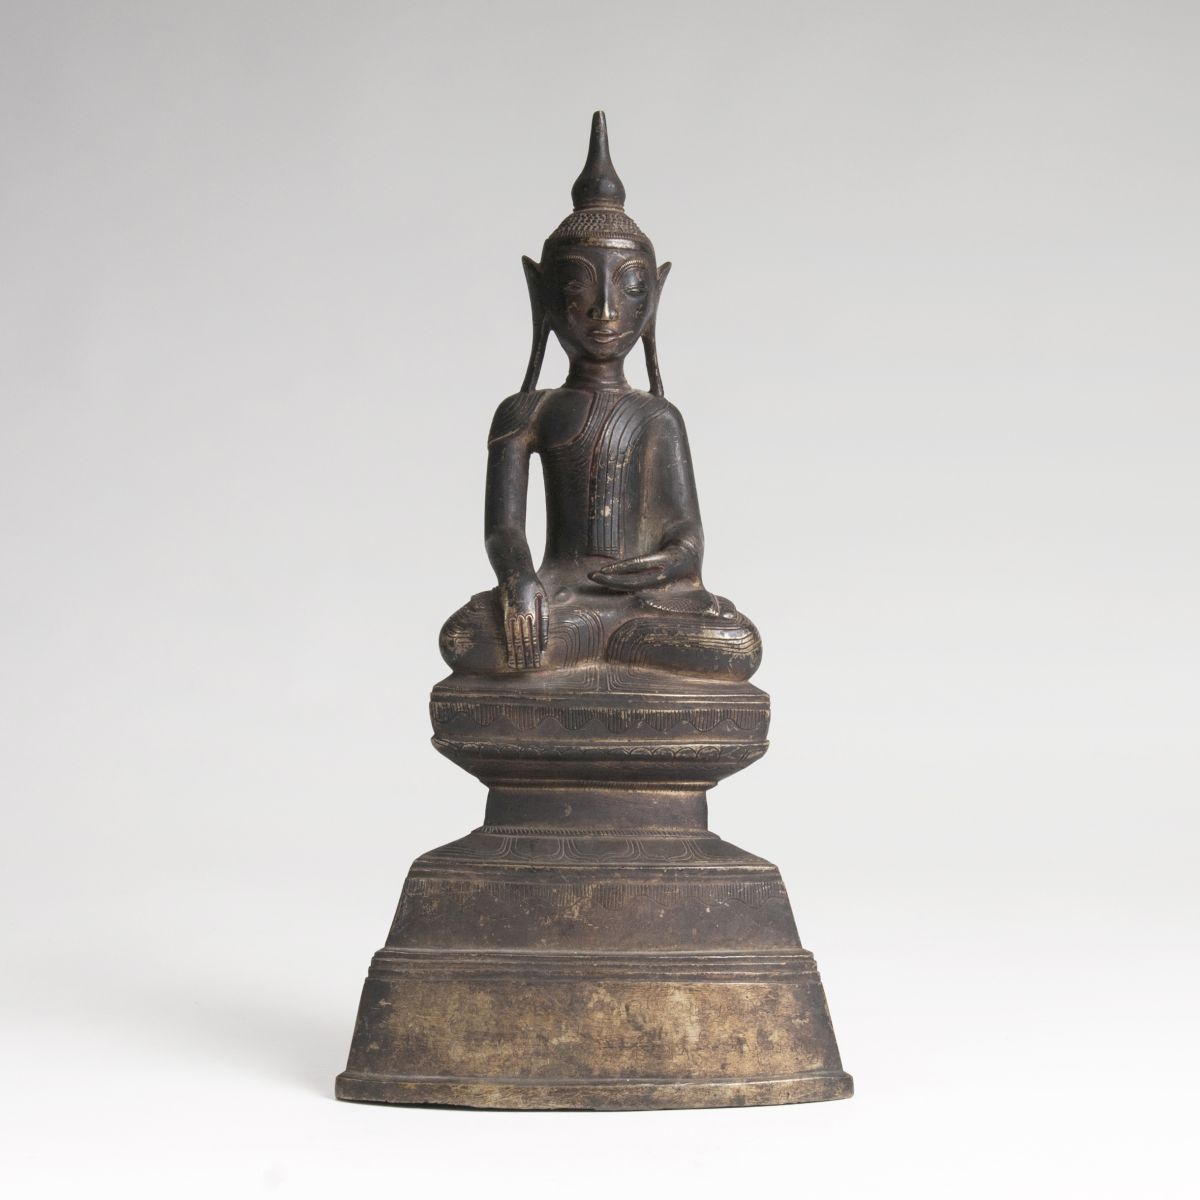 A Bronze figure 'Buddha Shakyamuni'